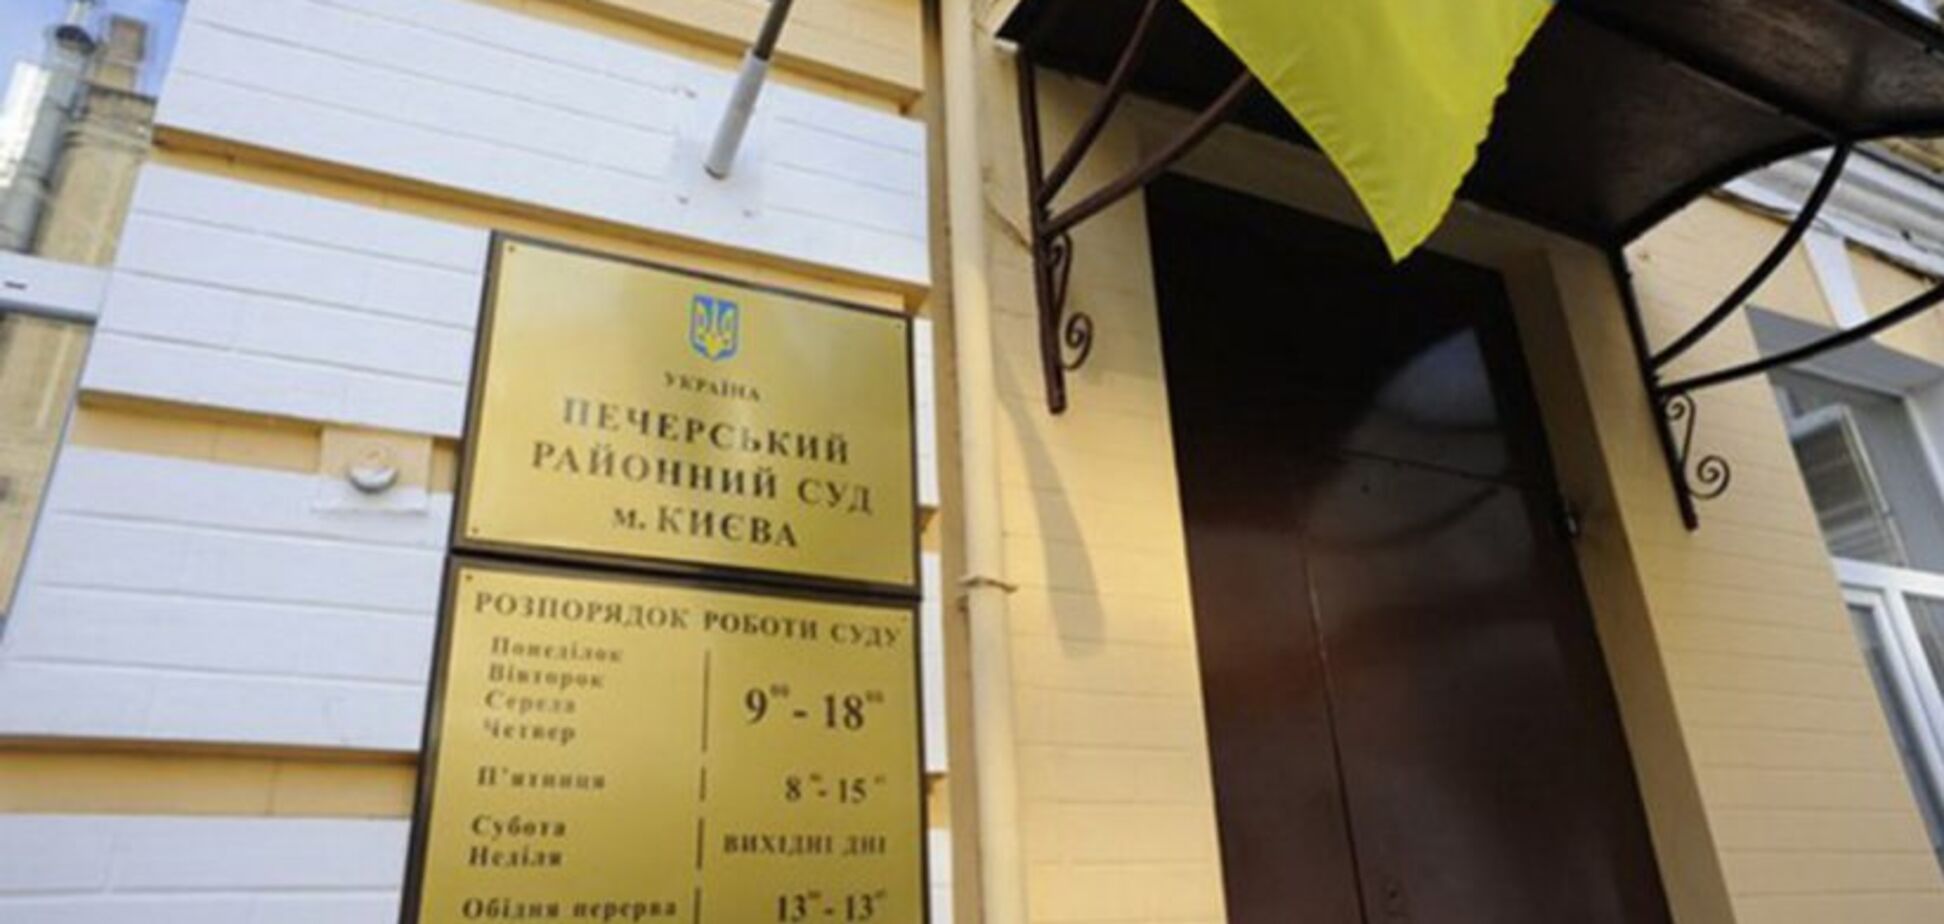 'Записываются с шести утра!' В Киеве под судом засветился сотрудник прокуратуры. Видео